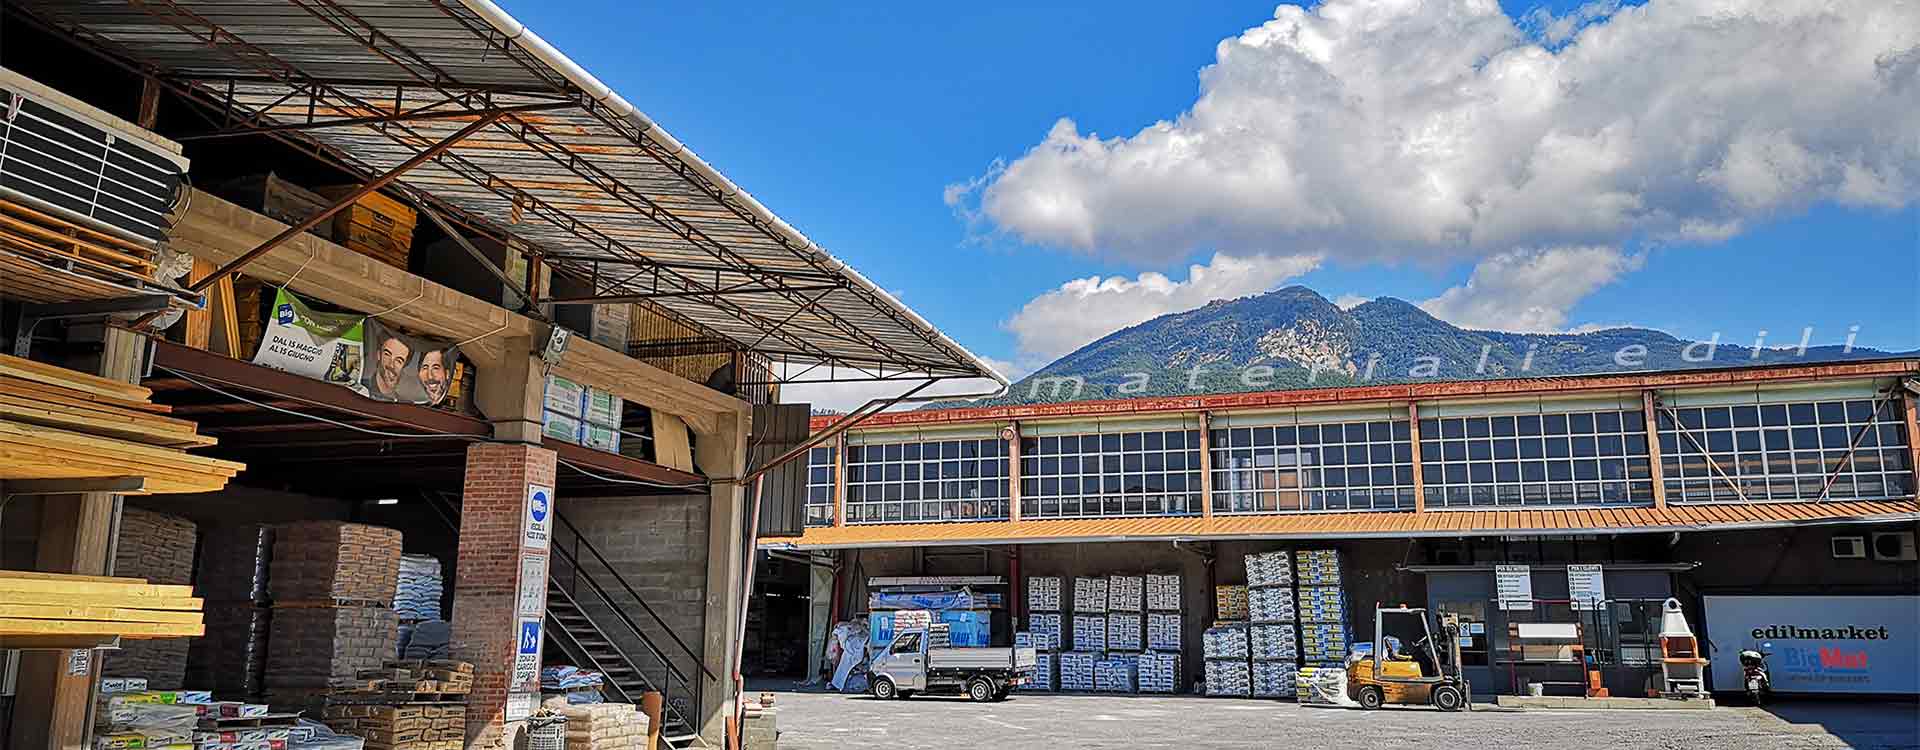 Produzione di tetti in legno, solai, e ferramenta a Massa Carrara in Toscana